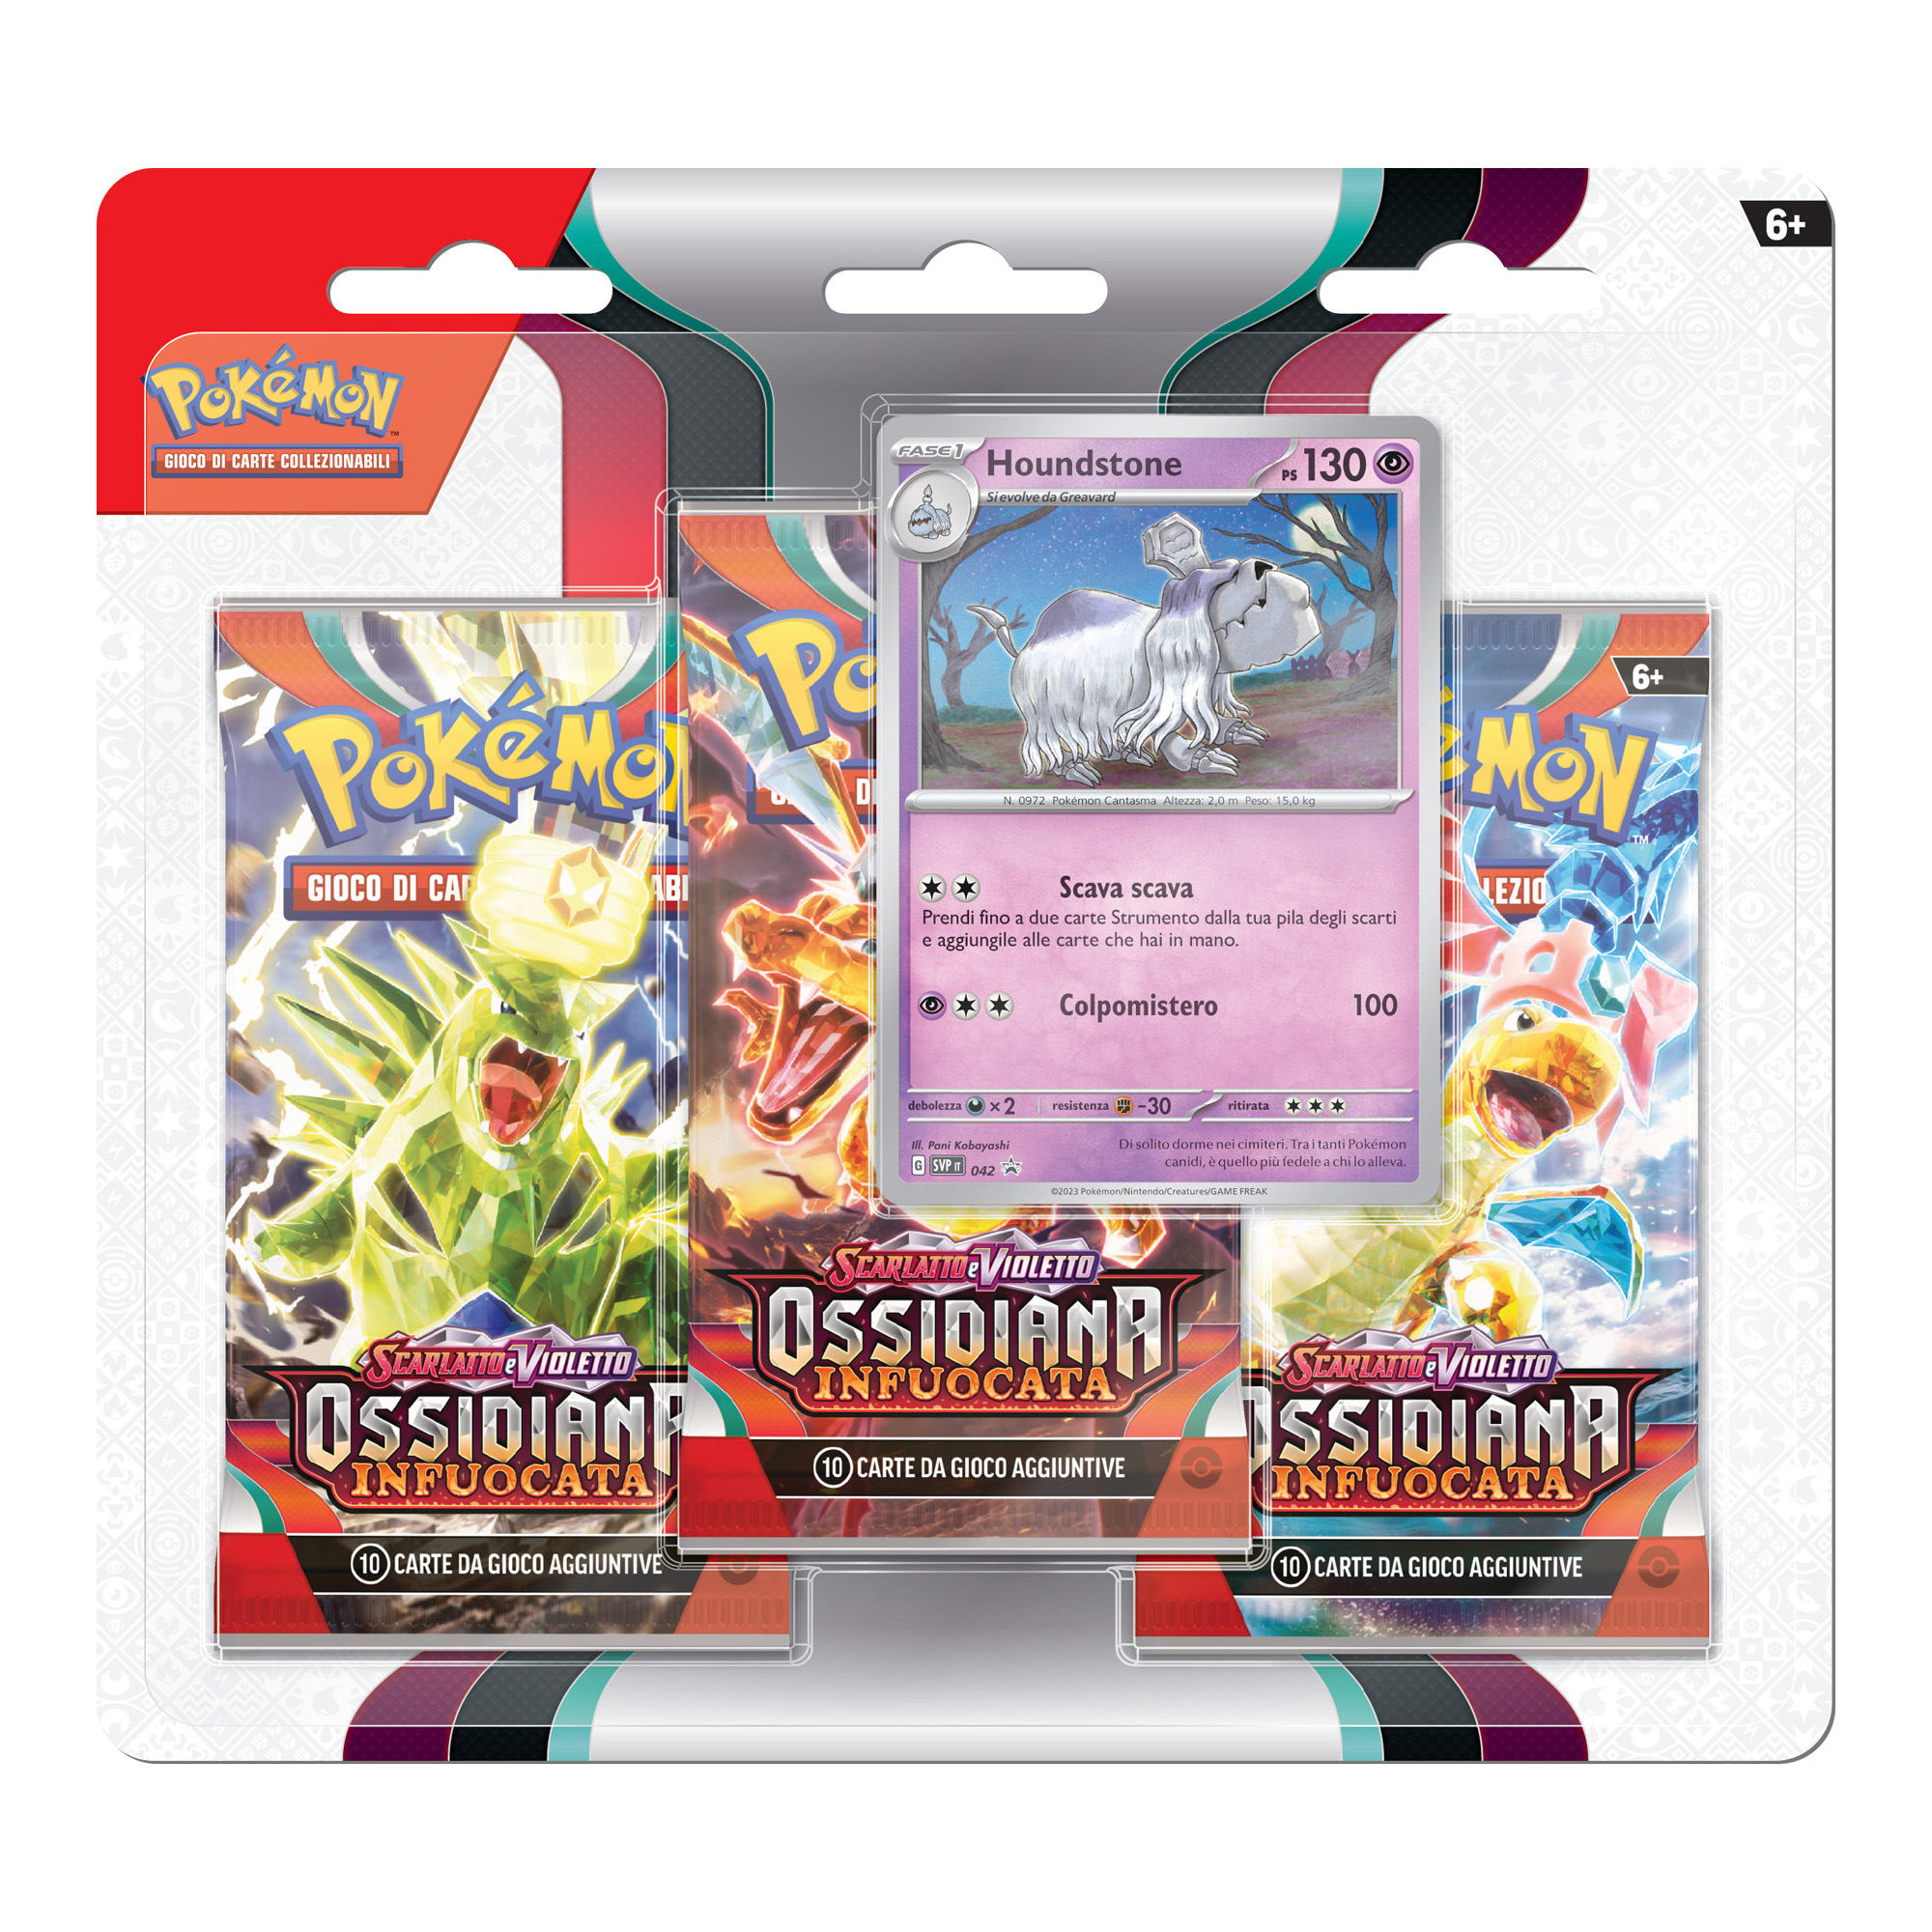 Pokemon Scarlatto e Violetto SV3 Ossidiana Infuocata 3 Pack Blister - Pokémon